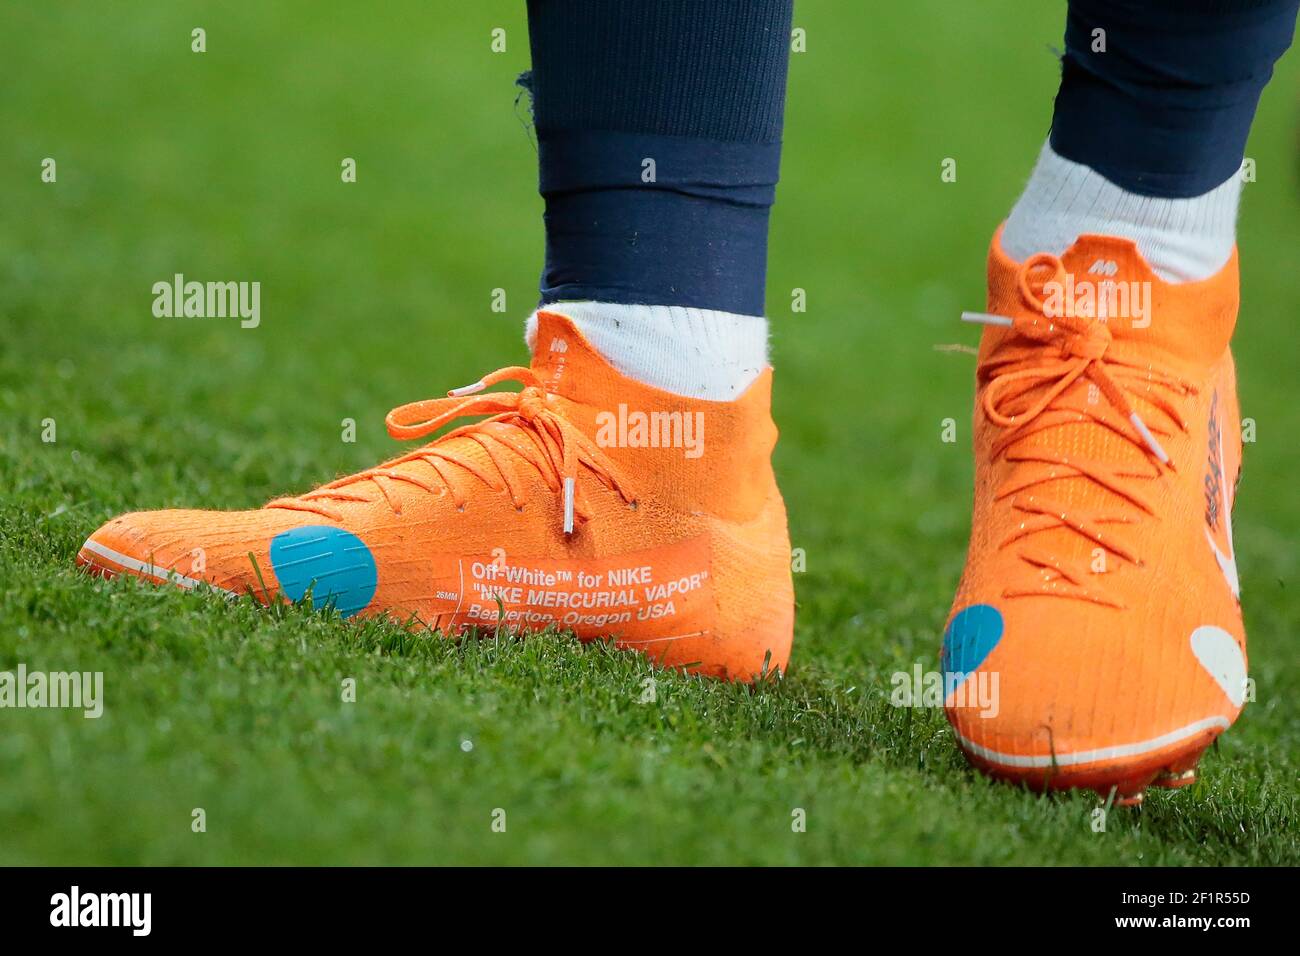 Zapatos de Kylian Mbappe (PSG), Off-White ™ para NIKE 'Nike Mercurial Vapore' Beaverton, Oregon USA c. 2018 'KNIT', durante el francés L1 partido de fútbol entre Saint-Germain y Mónaco,